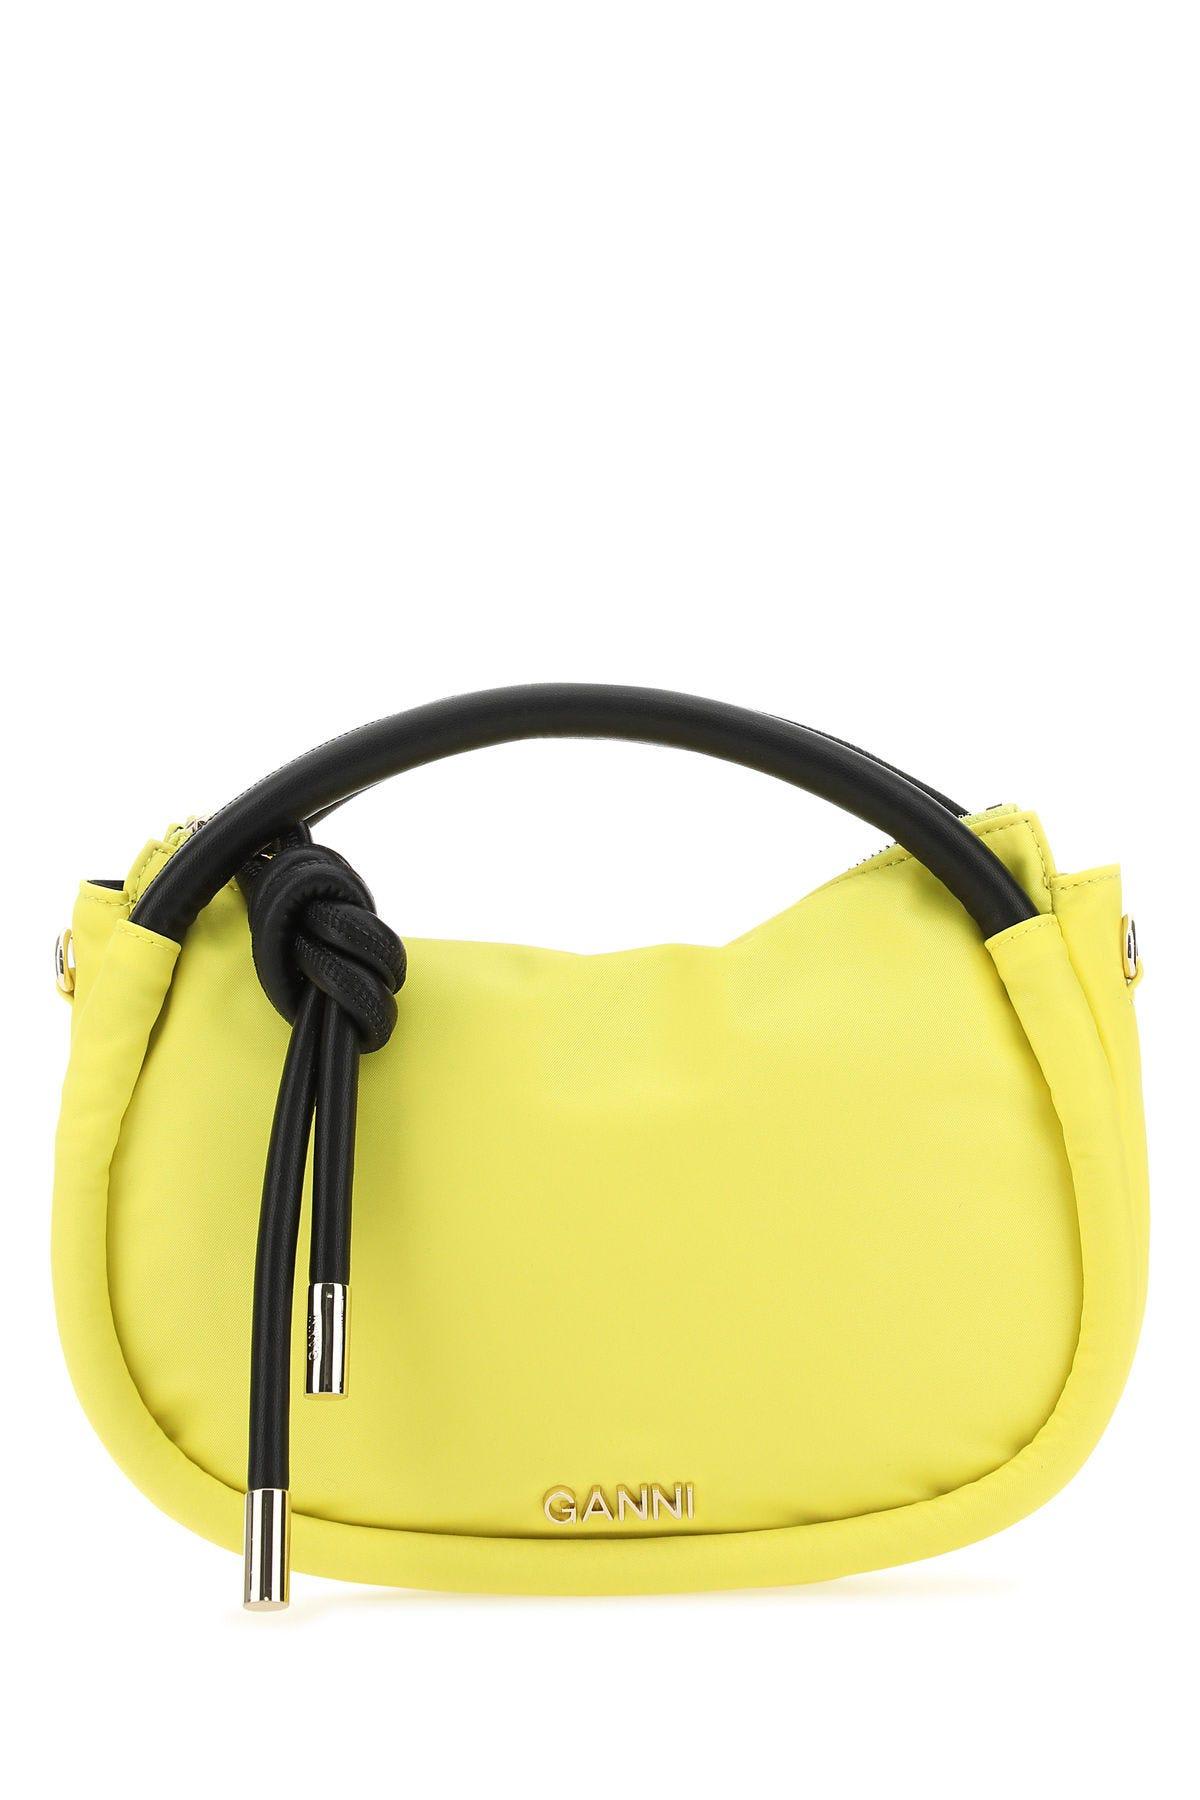 Ganni Yellow Nylon Mini Knot Handbag